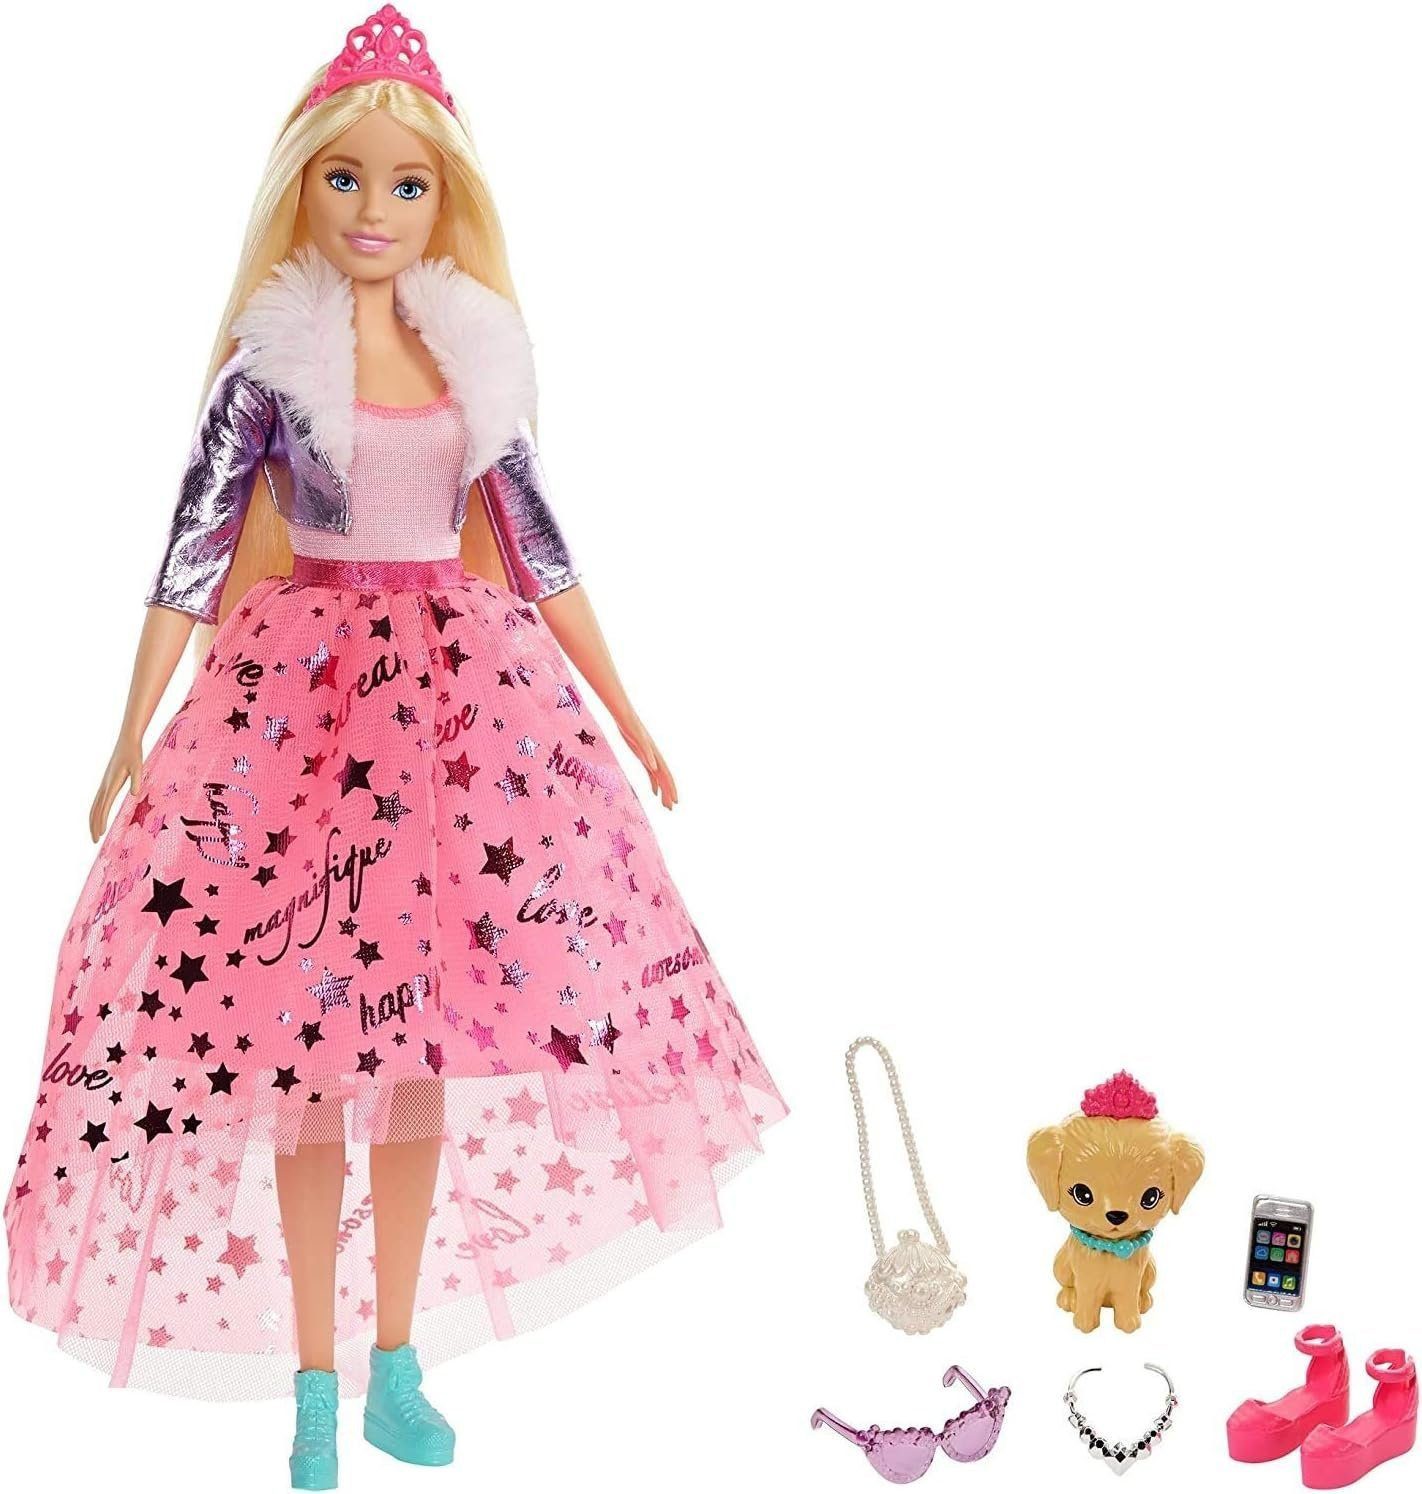 Barbie Anziehpuppe Prinzessinnen Abenteuer Puppe mit Mode (ca. 30 cm), Barbie Puppen (mit Hündchen, 2 Paar Schuhe, Diadem und 4 Accessoires, 9-tlg., ab 3 Jahren, Ken), The Movie, Spielpuppen, Spielpuppe Barbie, Haus, Prinzessin, Sale